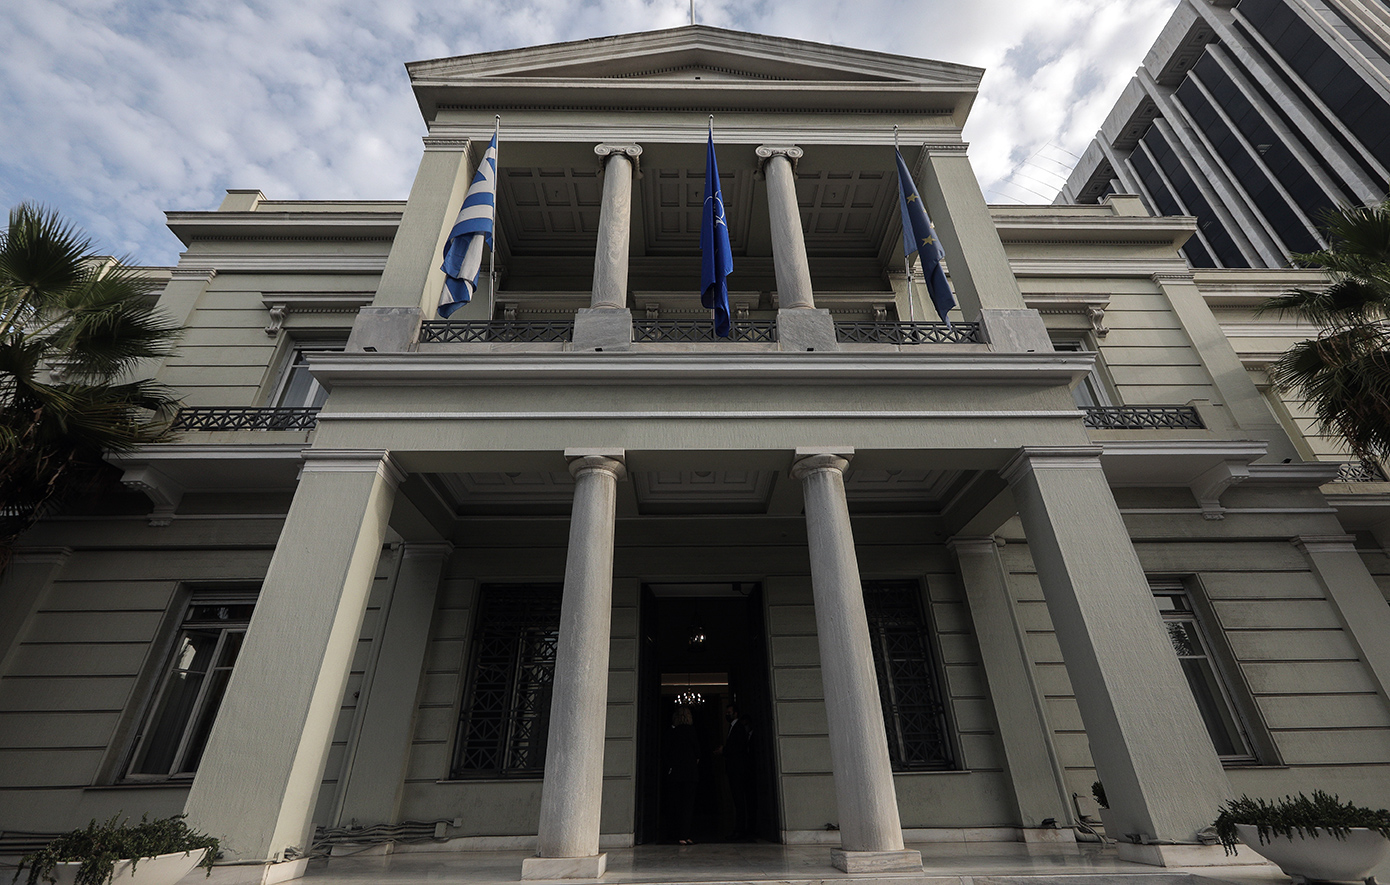 ΥΠΕΞ: Χαιρετίζουμε την απόφαση για έναρξη των ενταξιακών διαπραγματεύσεων της Βοσνίας και Ερζεγοβίνης